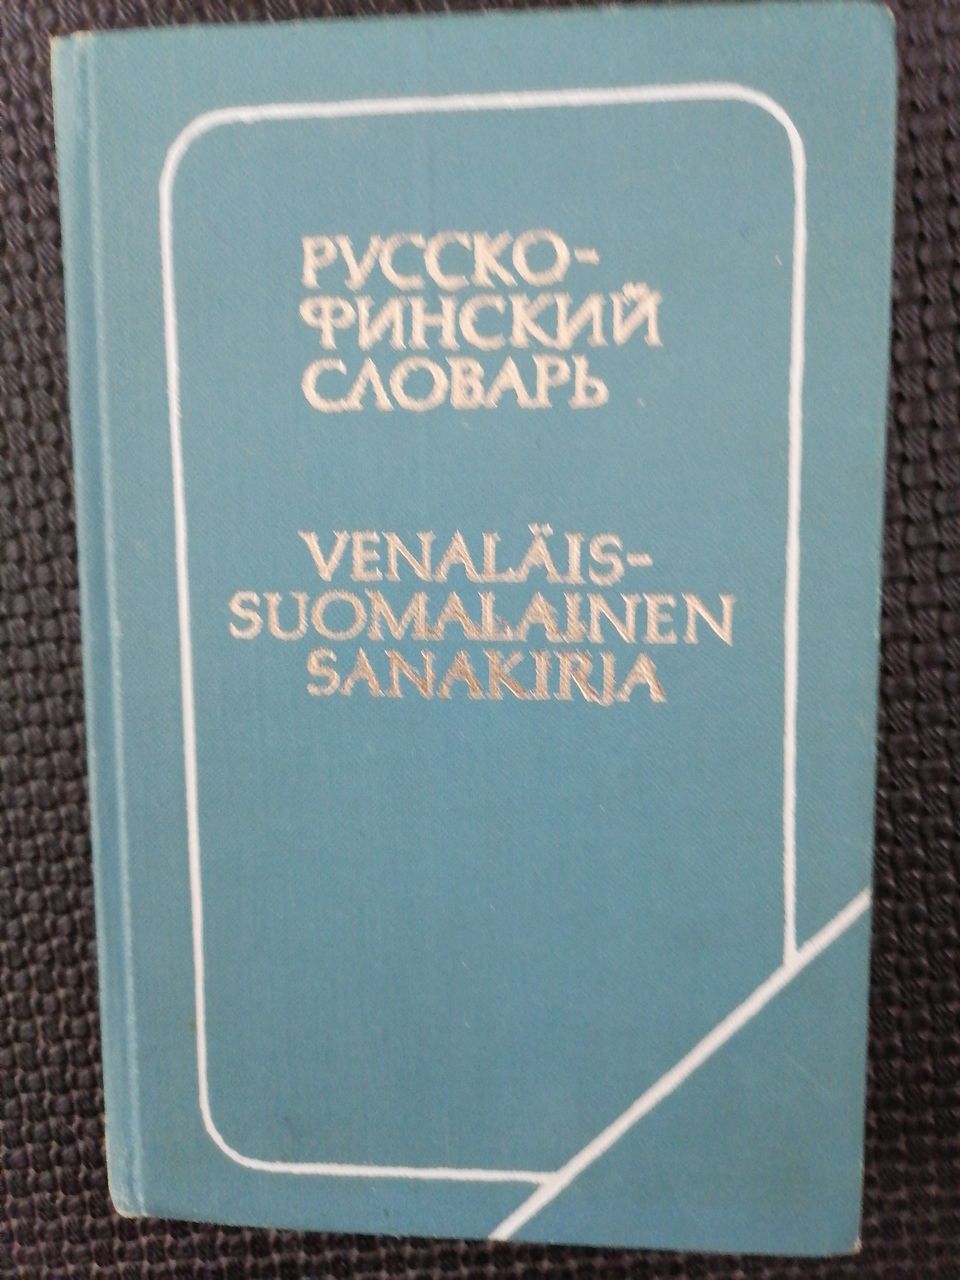 Venäläis suomalainen sanakirja